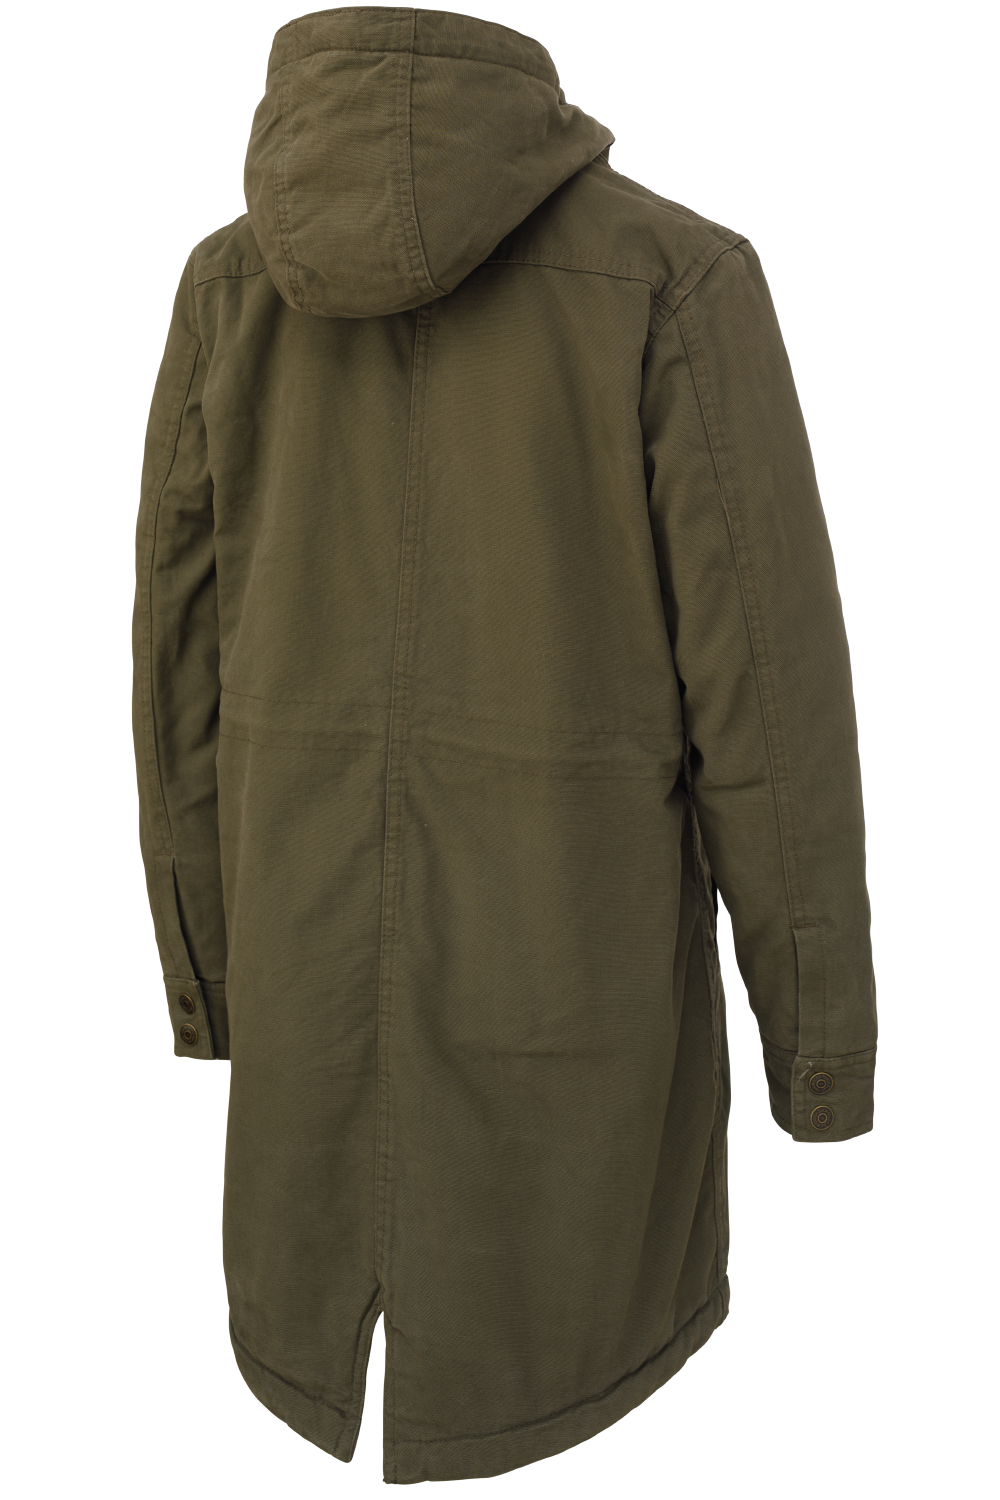 WOMEN'S Sherpa Lined Duck Jacket - Olive